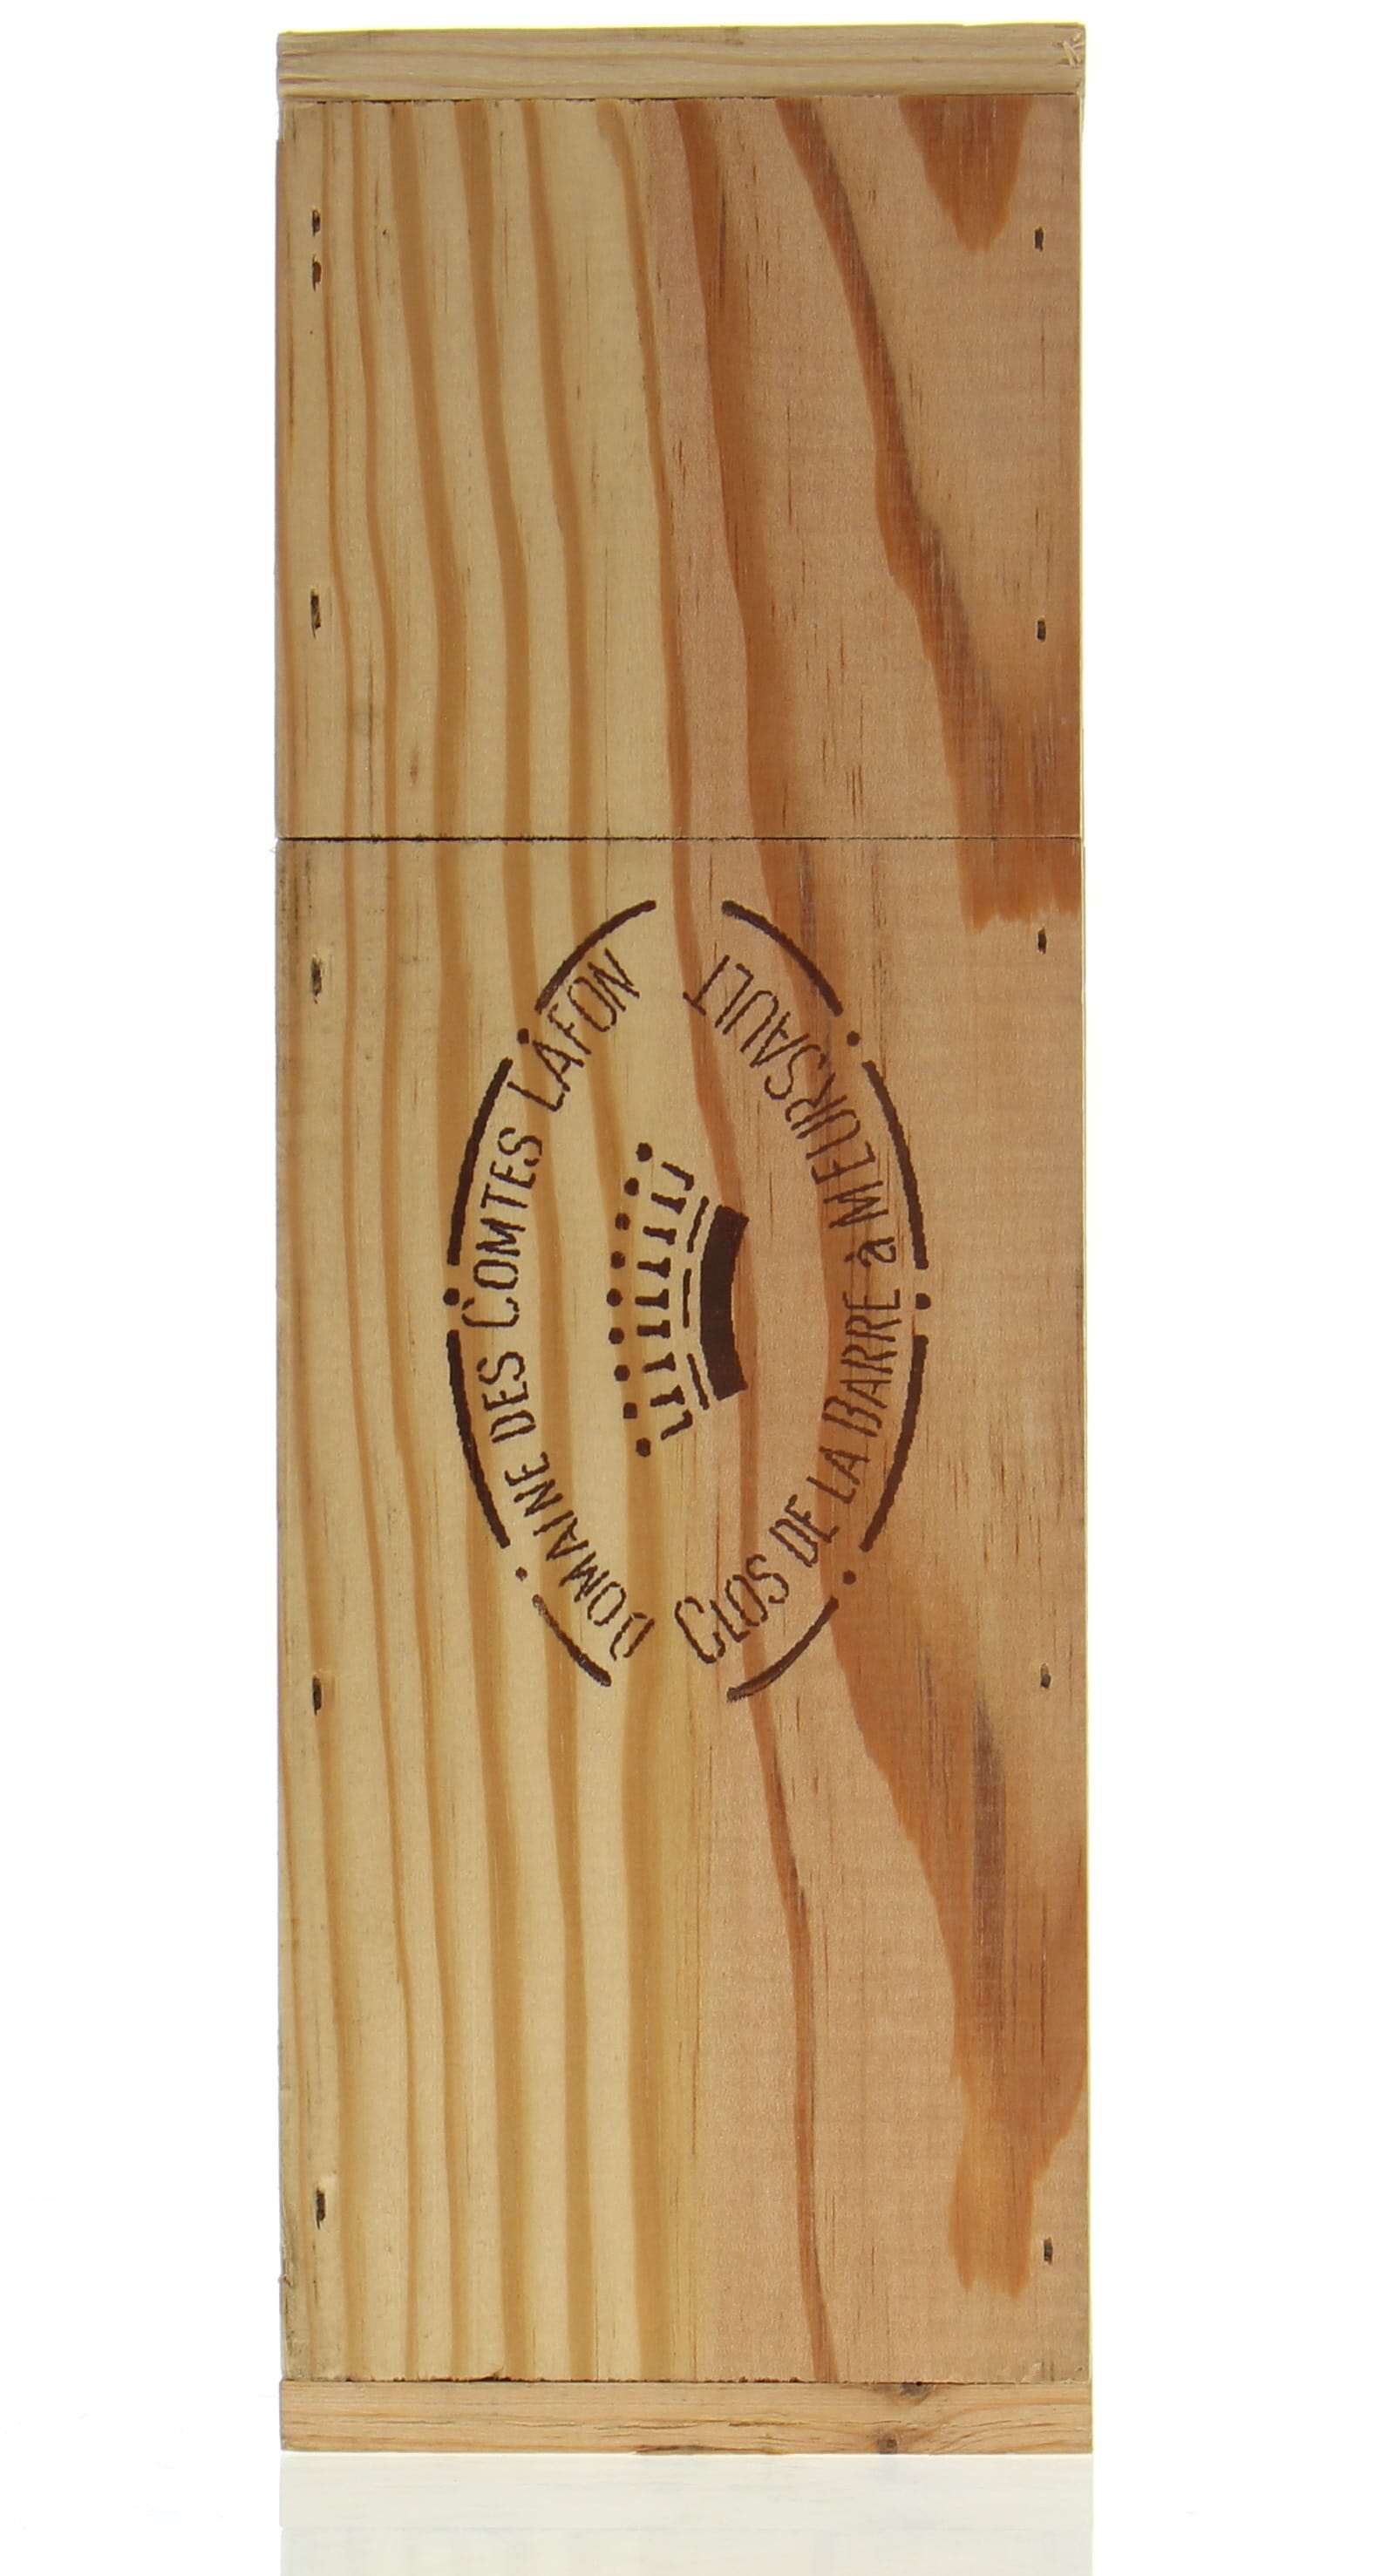 Domaines des Comtes Lafon - Le Montrachet 2005 From Original Wooden Case